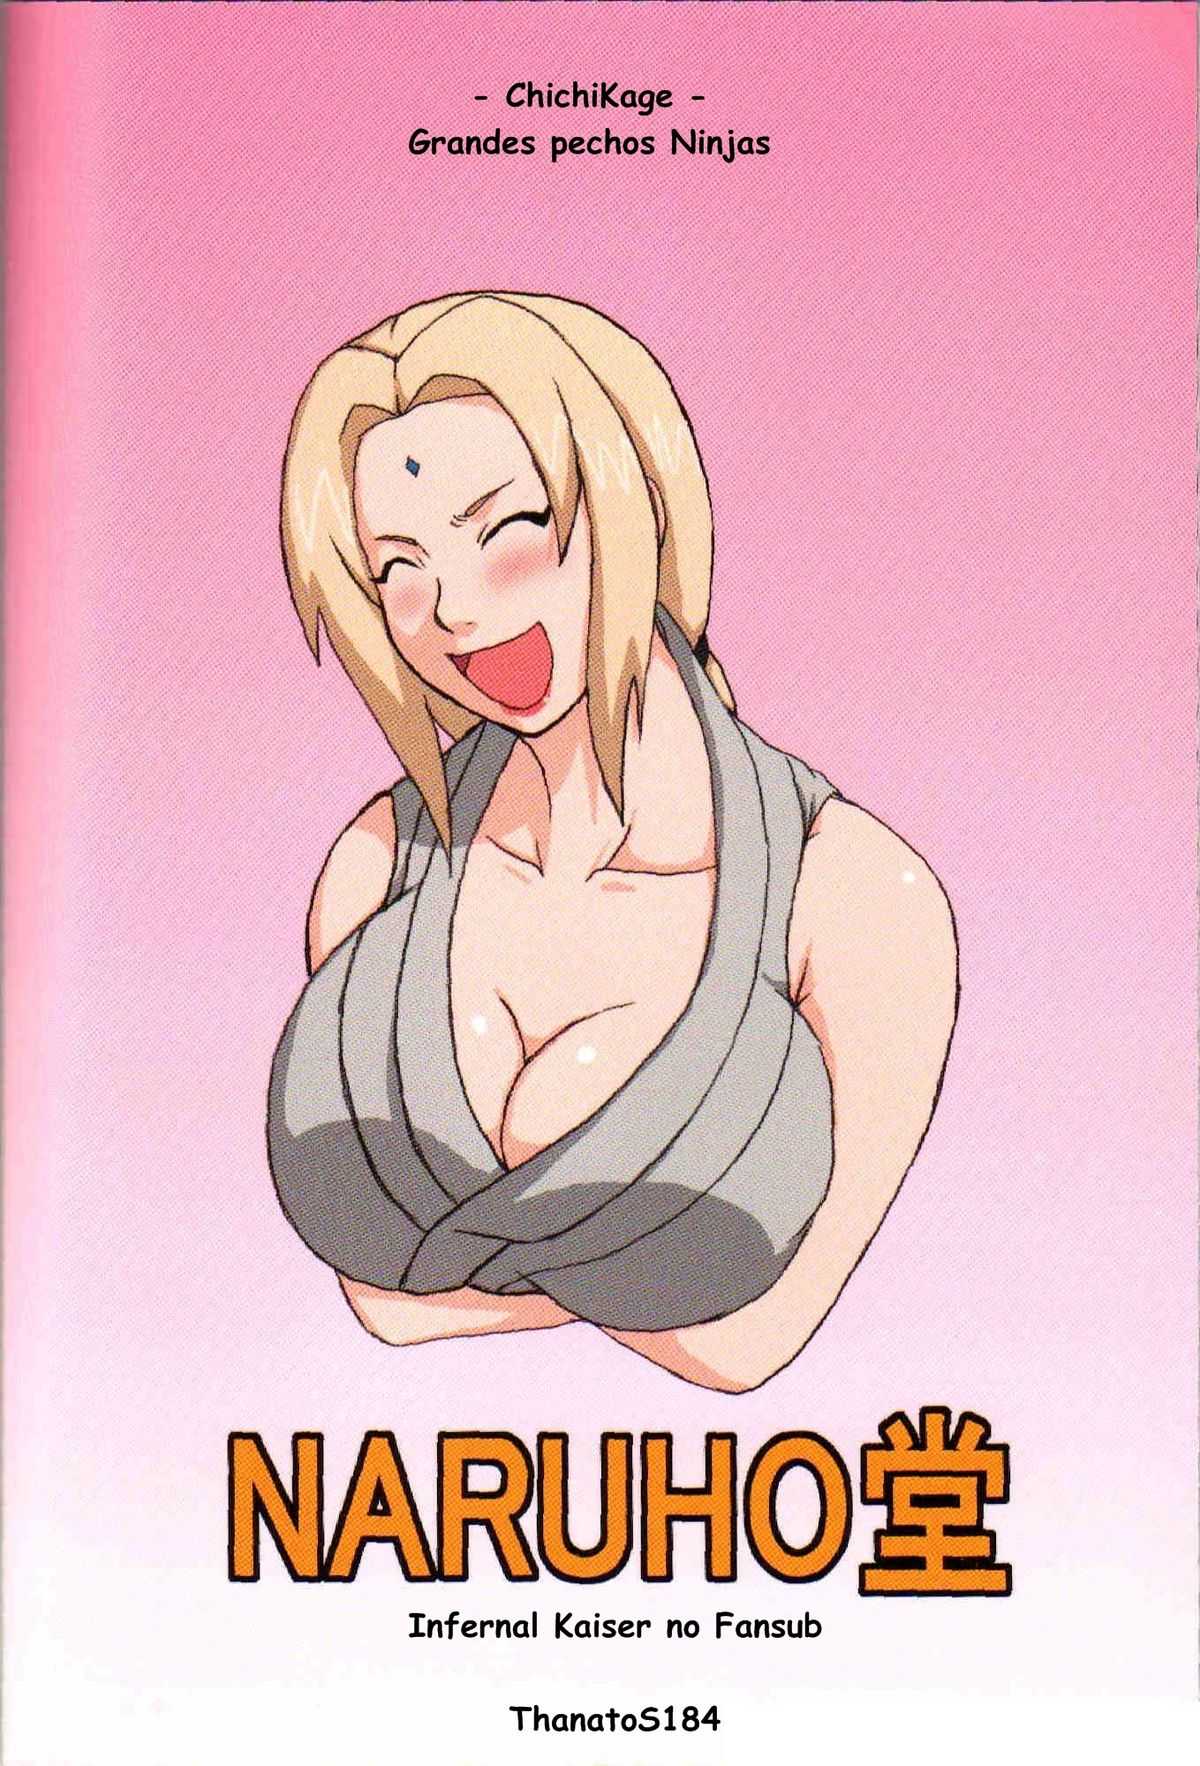 [Naruho-Dou] Naruto - Chichikage Grandes Pechos Ninja [SPA] 